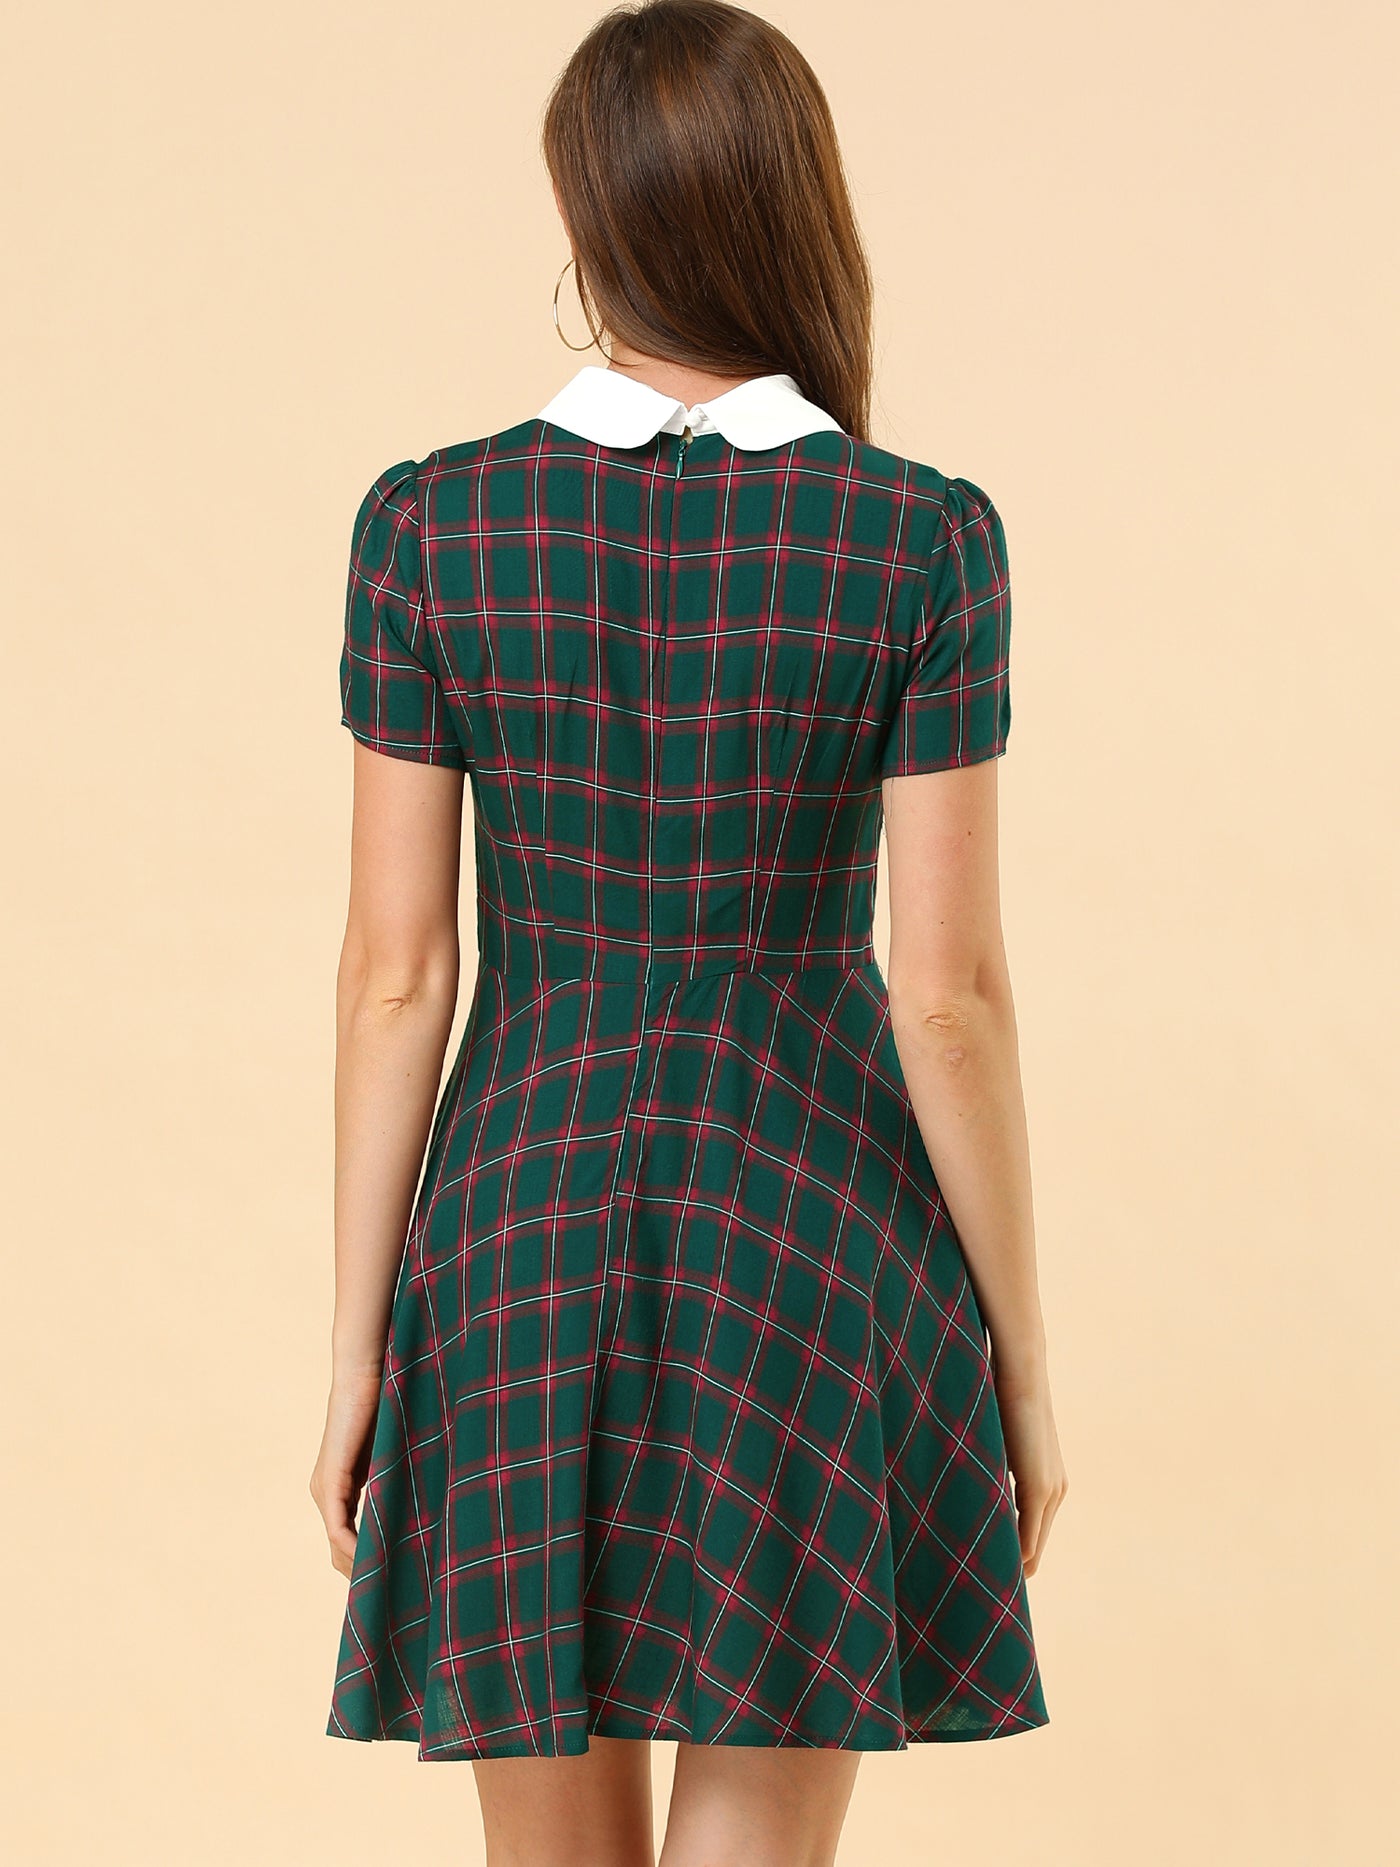 Allegra K Plaid Grid Peter Pan Collar Contrast Short Sleeve A-line Dress